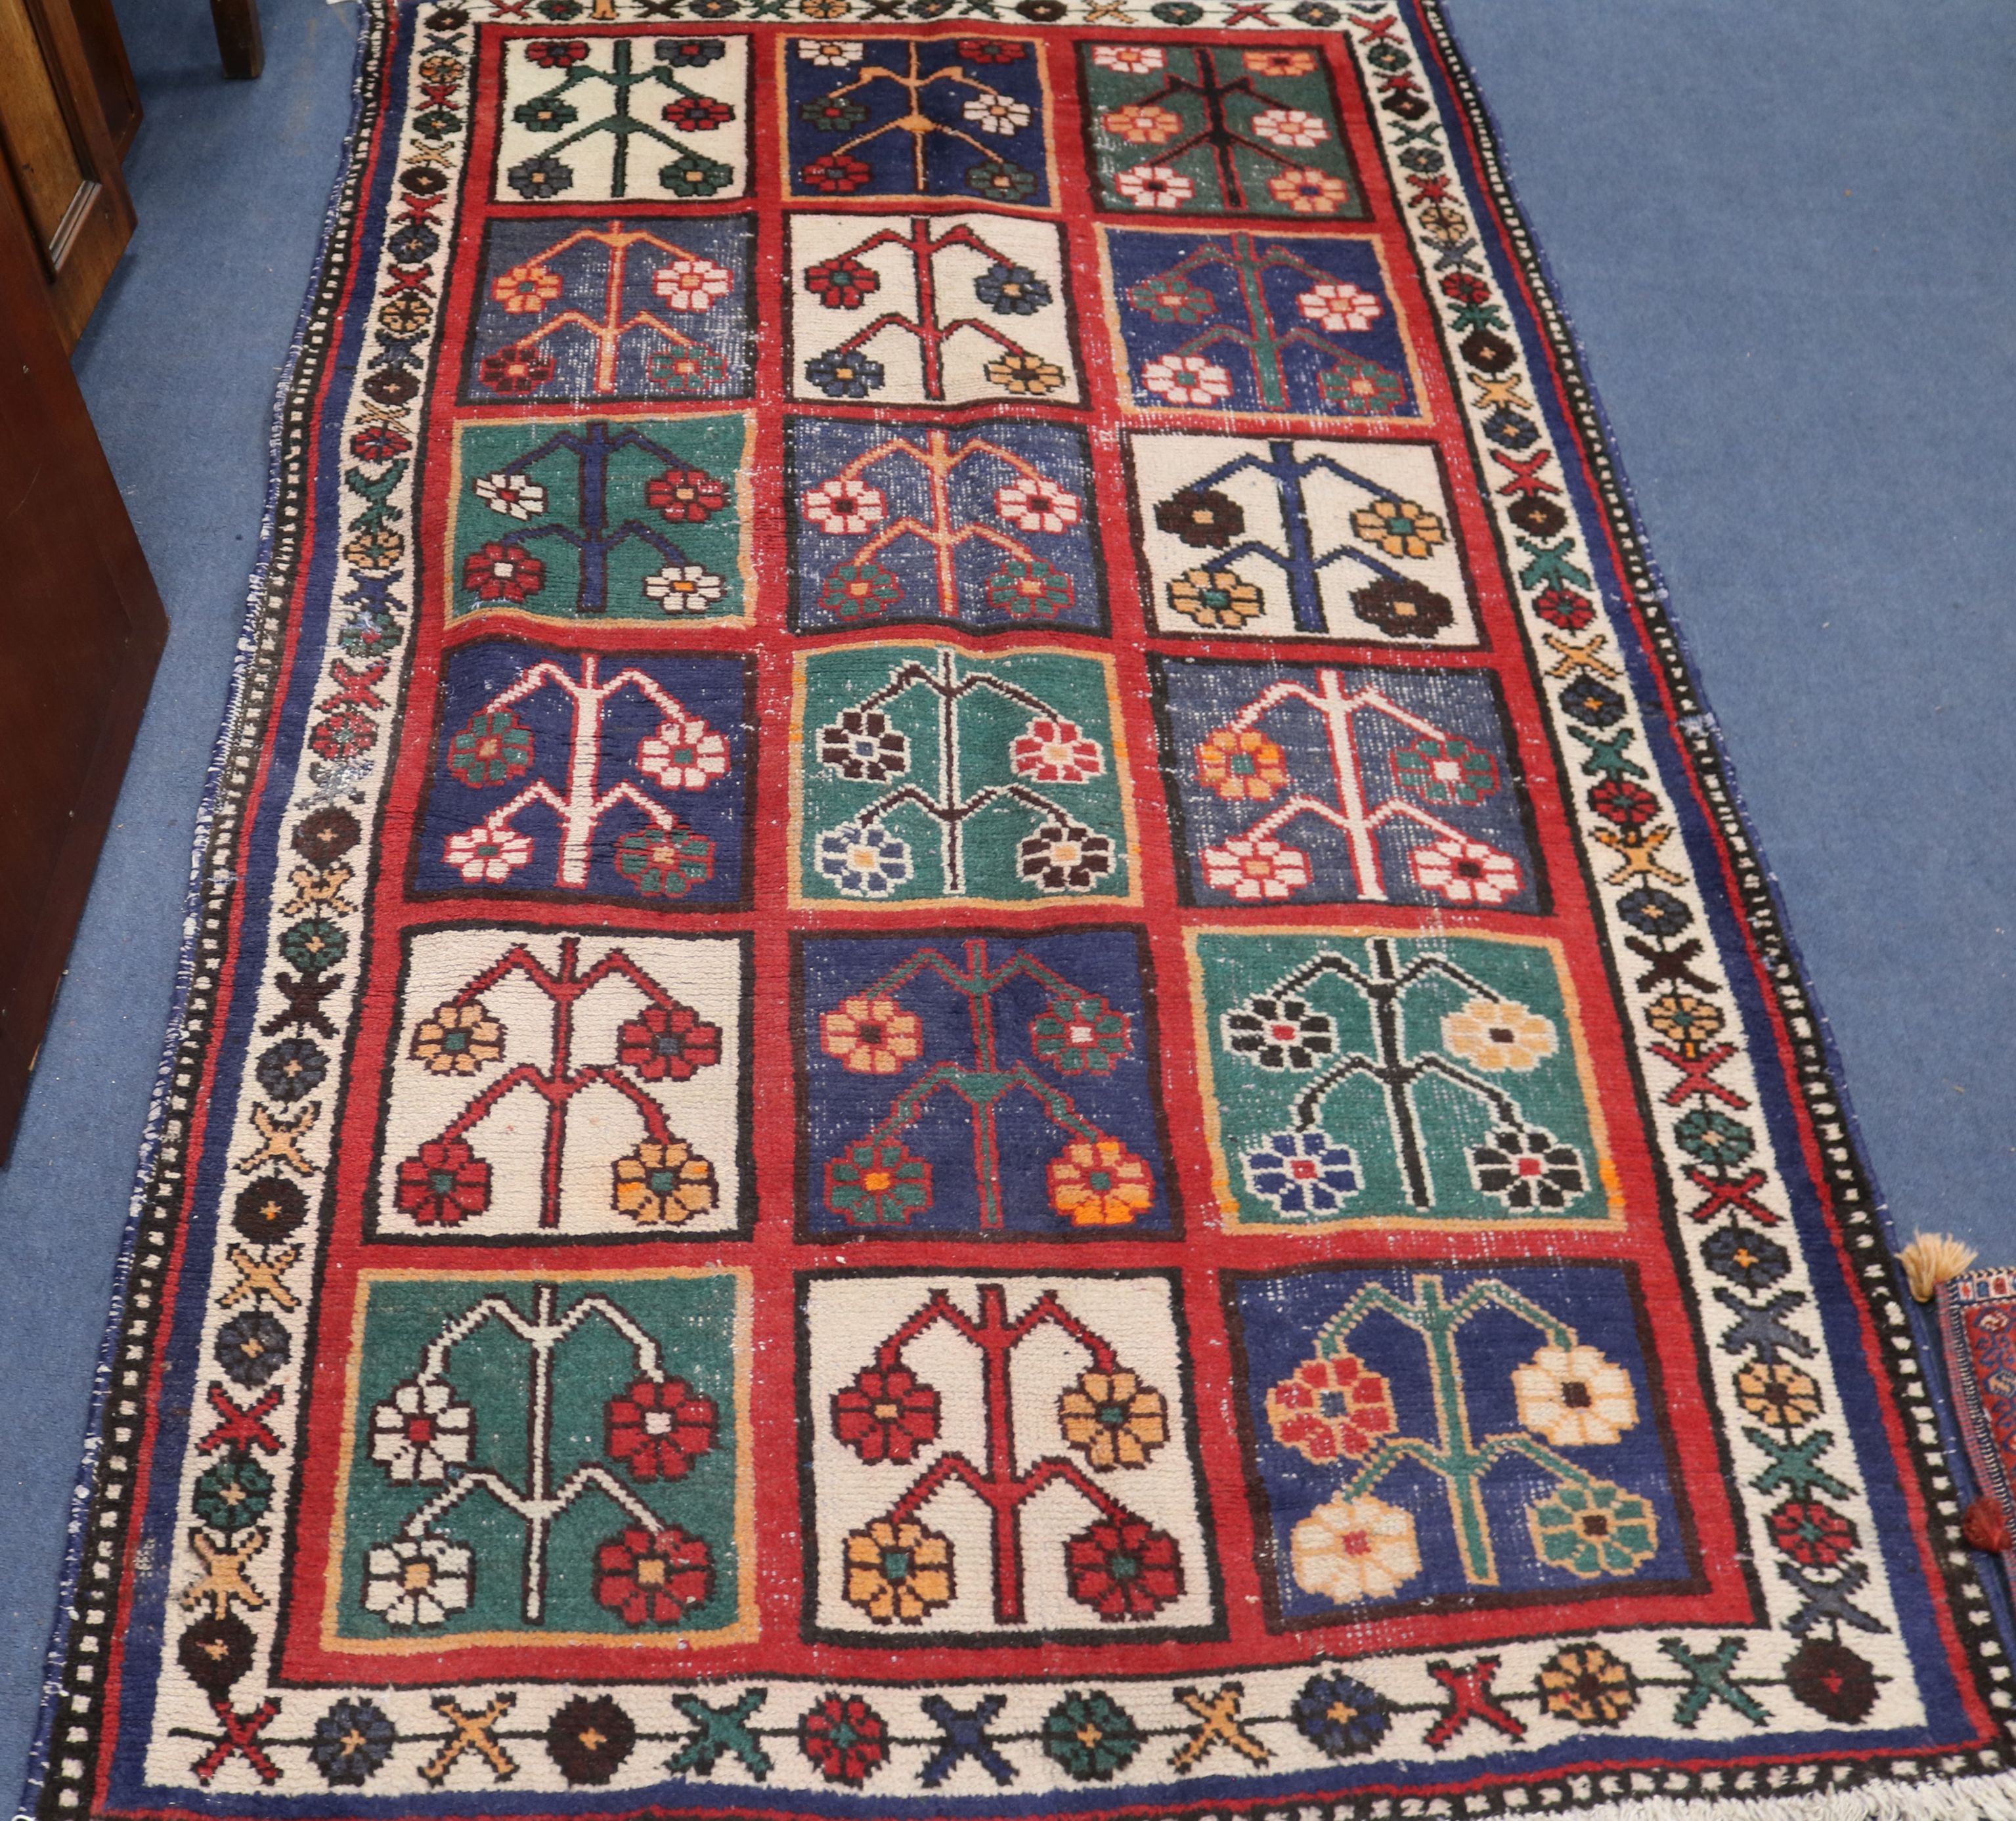 A Persian Hamadan rug, 2.1 x 1.3m